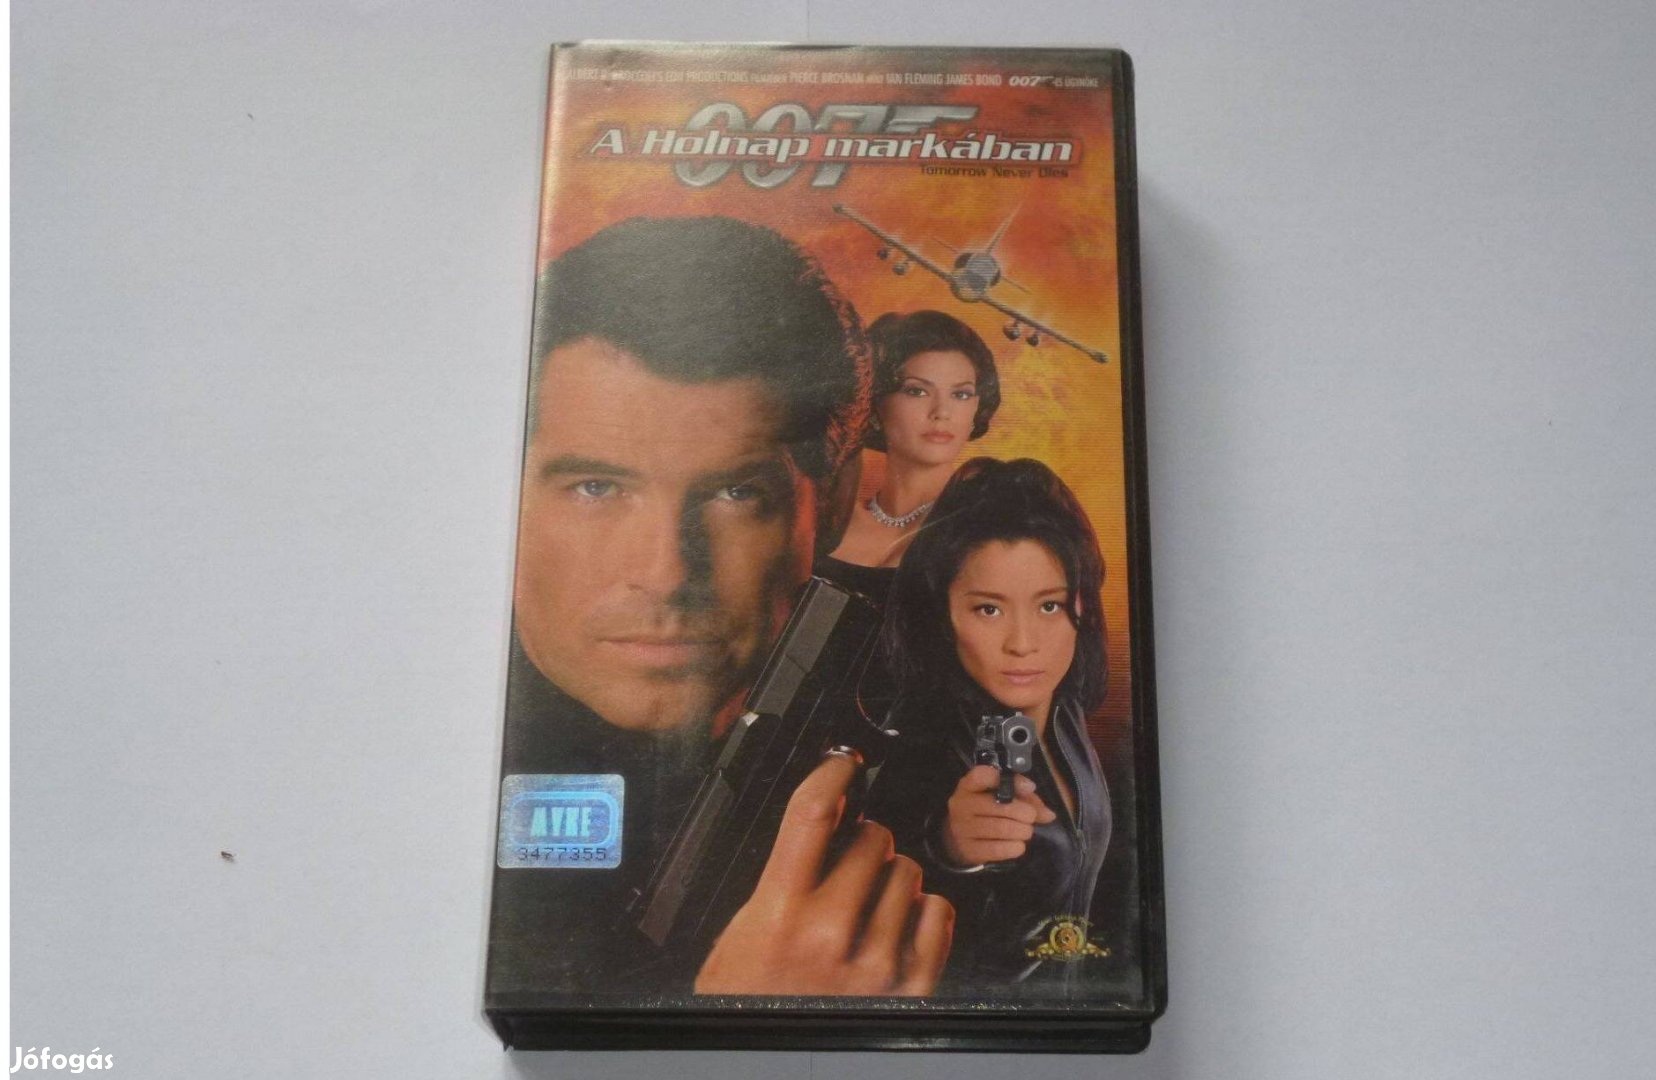 James Bond 007 - A holnap markában (1997) VHS fs: Pierce Brosnan